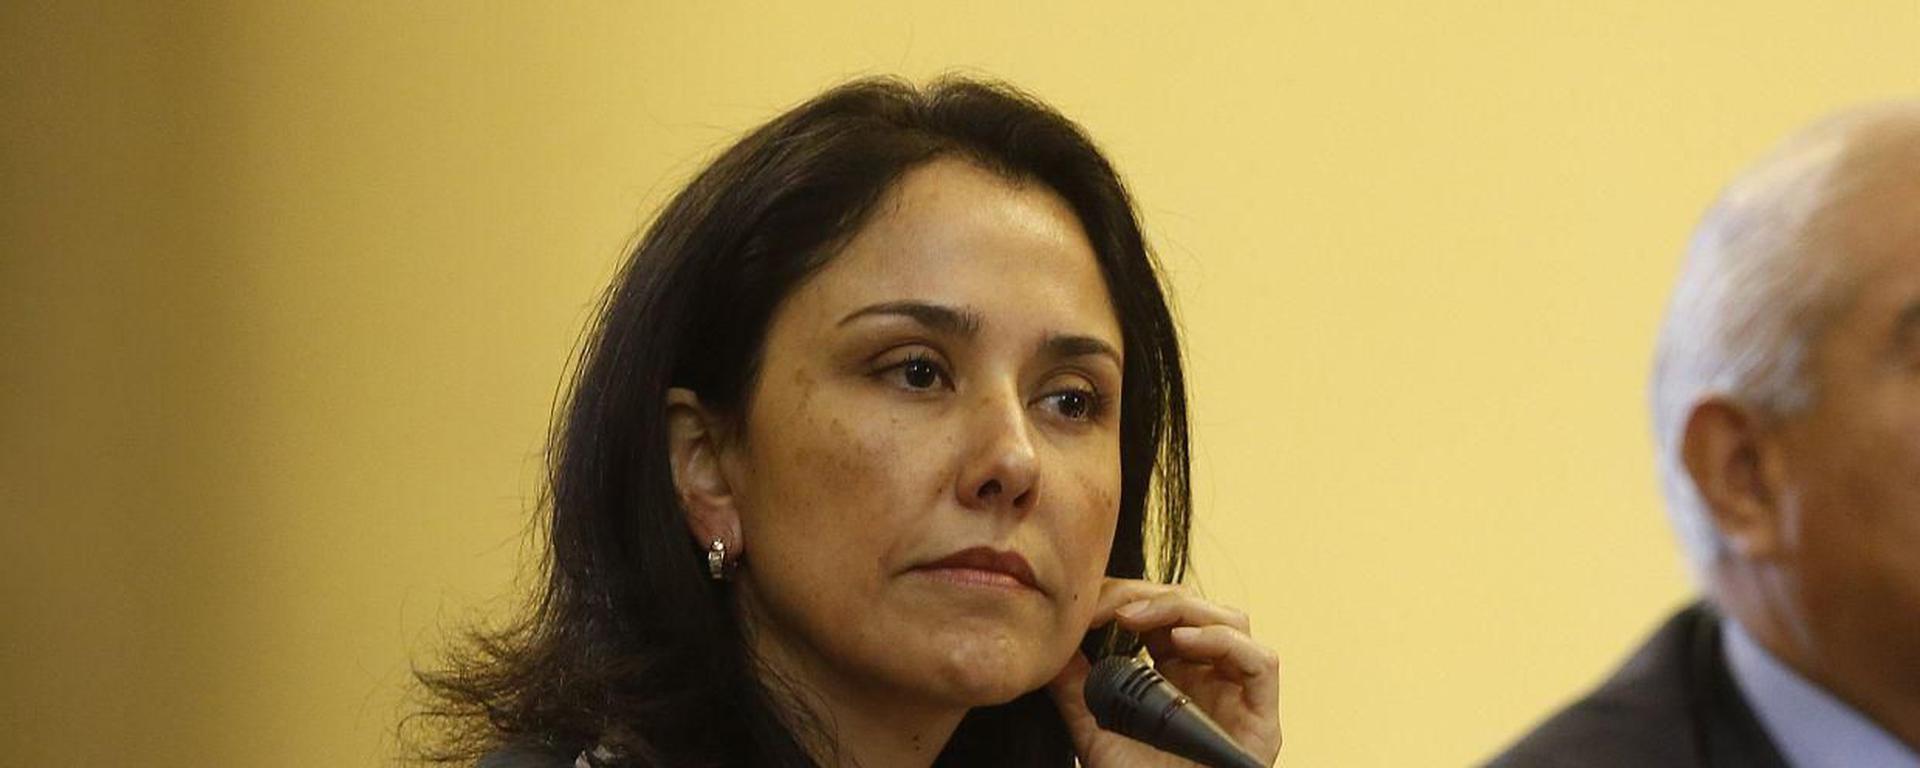 Poder Judicial ordena nuevo embargo contra bienes de Nadine Heredia: Los detalles de la medida